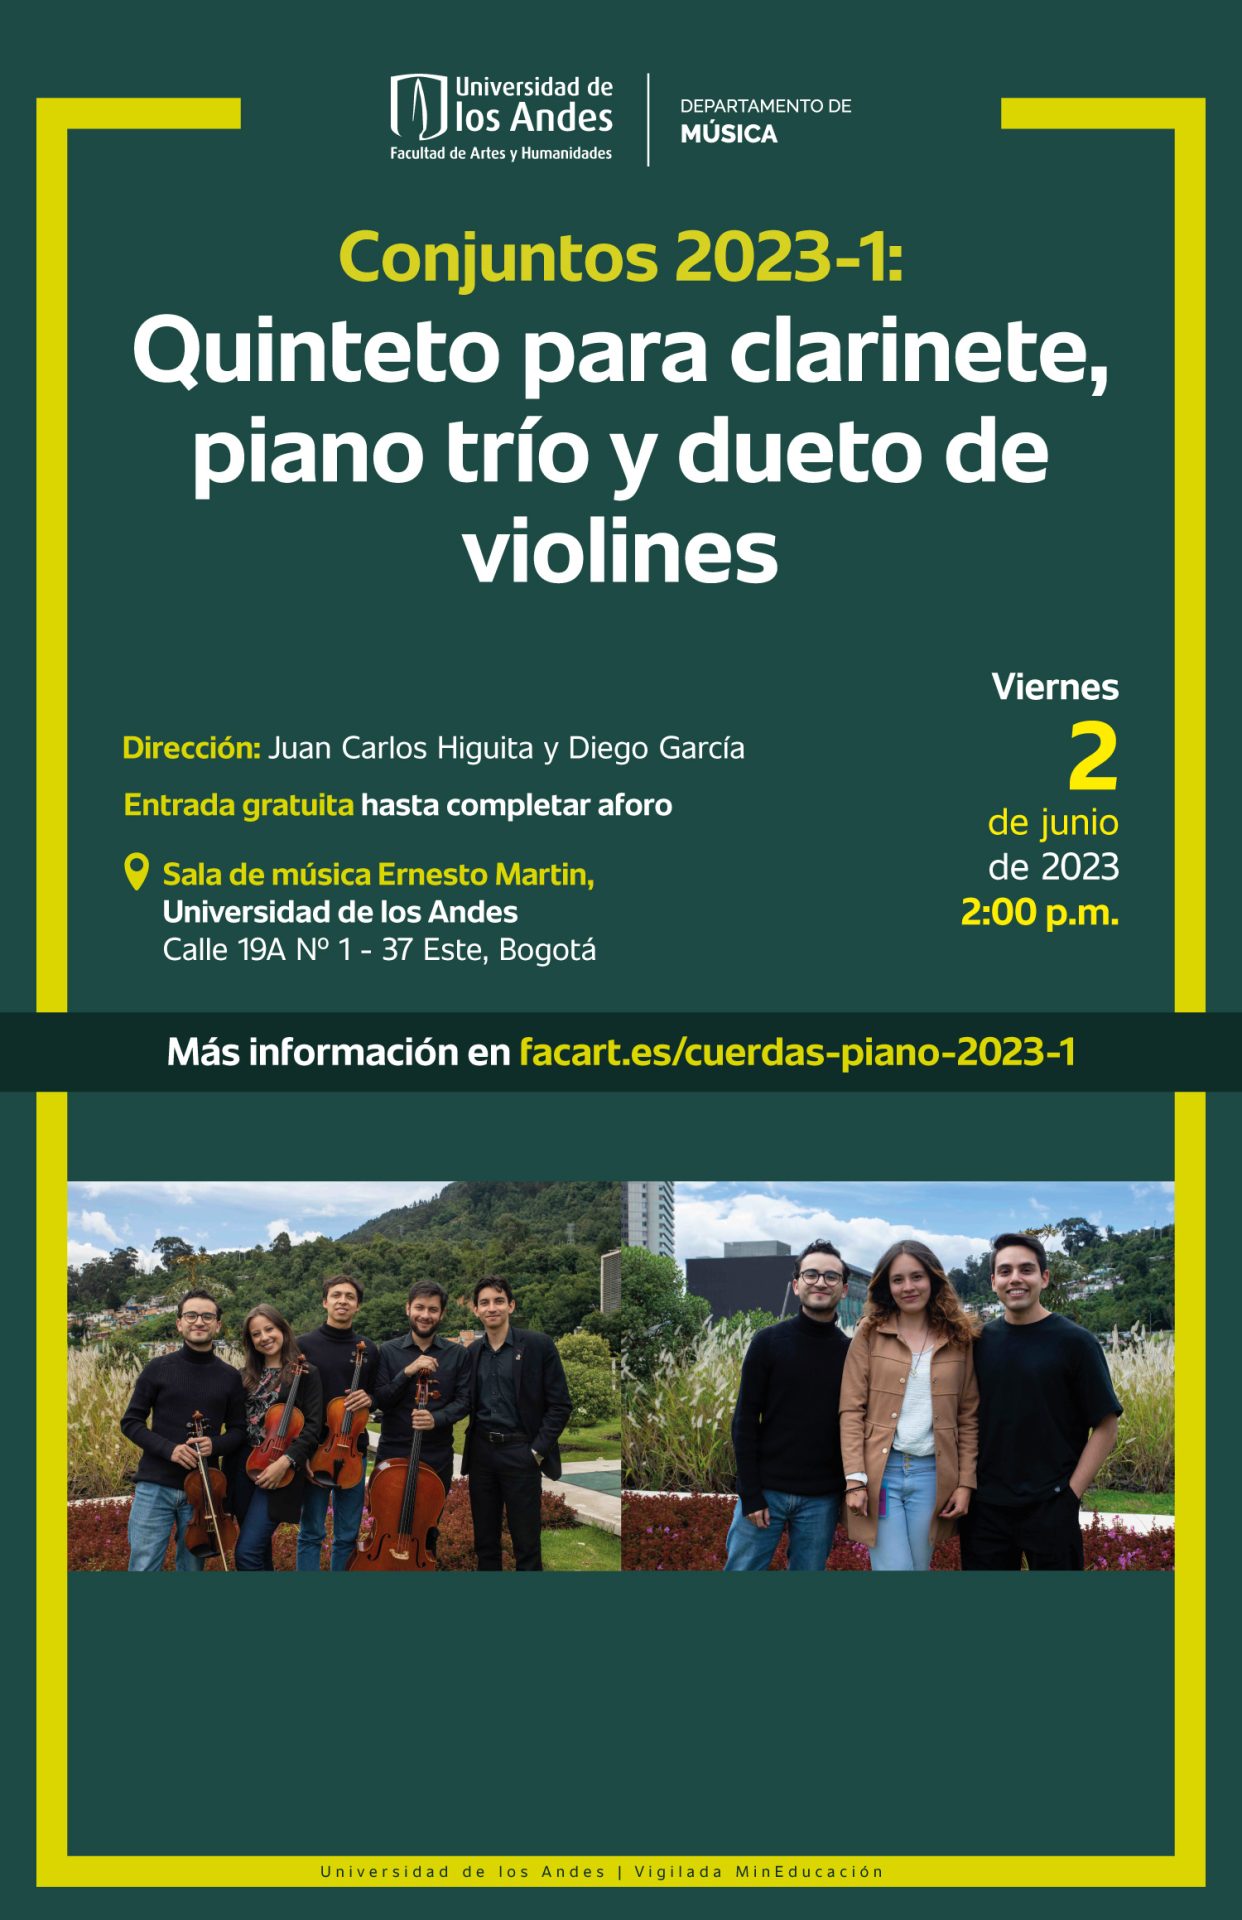 Viernes 2 de junio de 2023 a las 2:00 p.m. en la sala de música Ernesto Martin, Universidad de los Andes